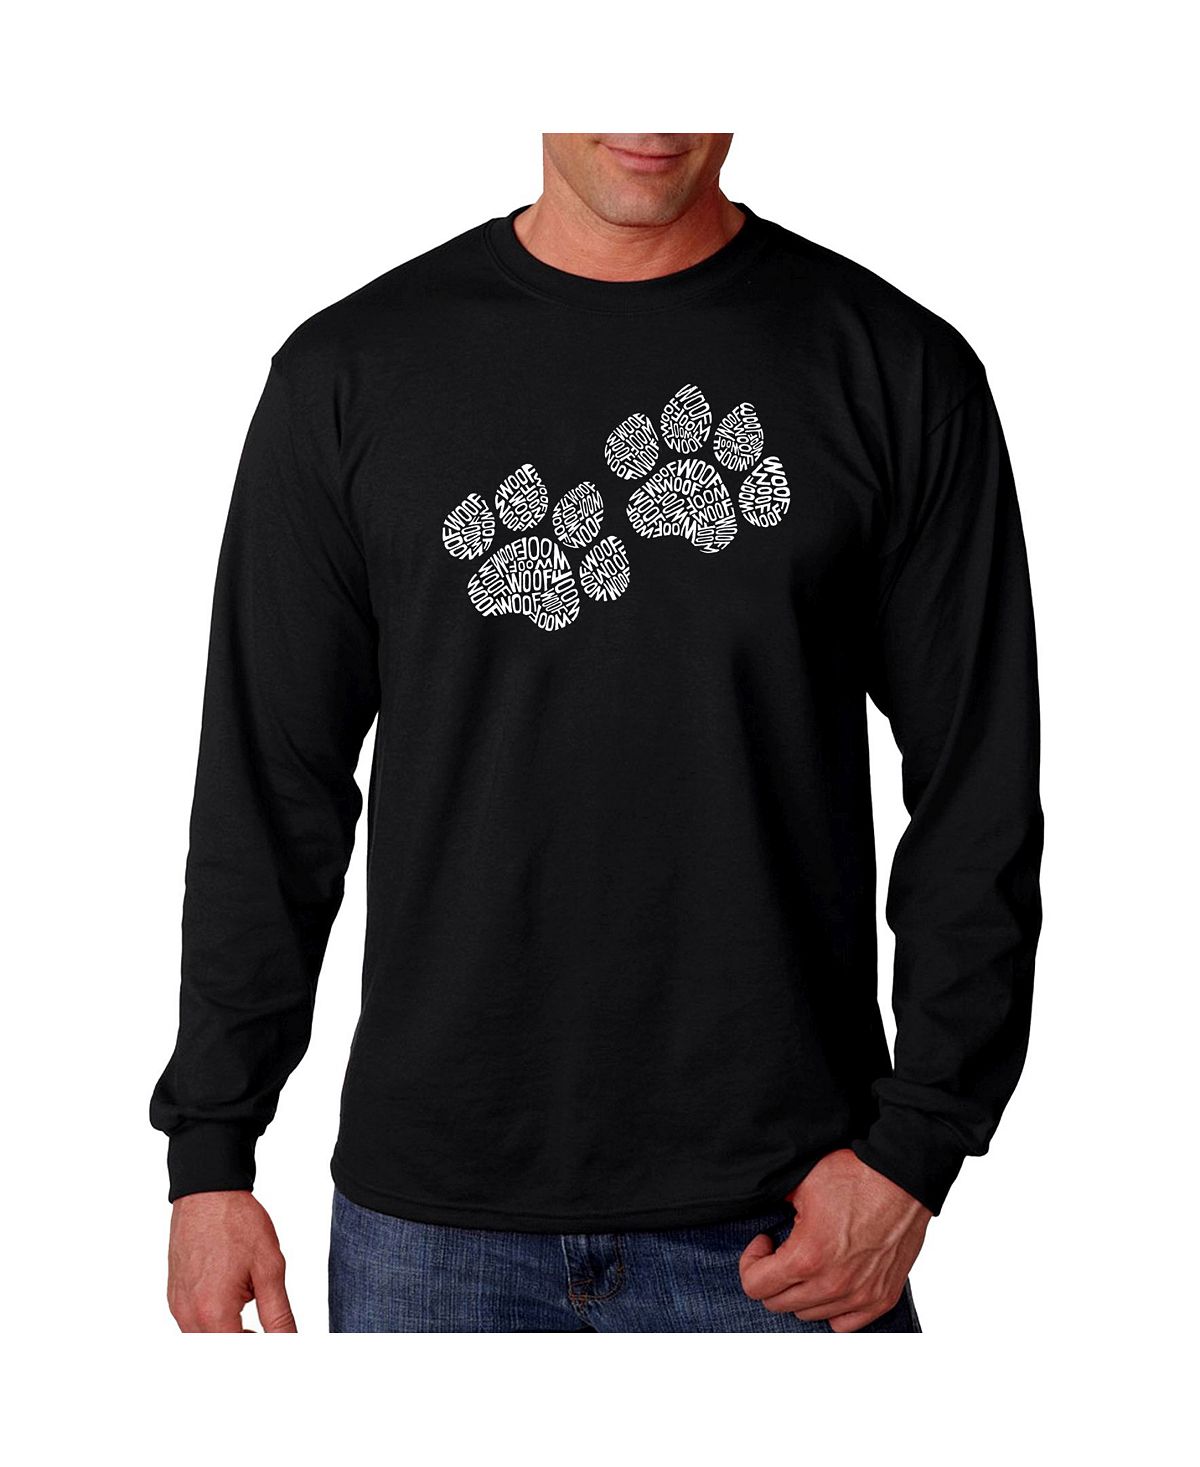 лента для скрапбукинга rancite r835 отпечатки собачьих лап с кошачьими следами Мужская футболка с длинным рукавом word art - woof paw prints LA Pop Art, черный